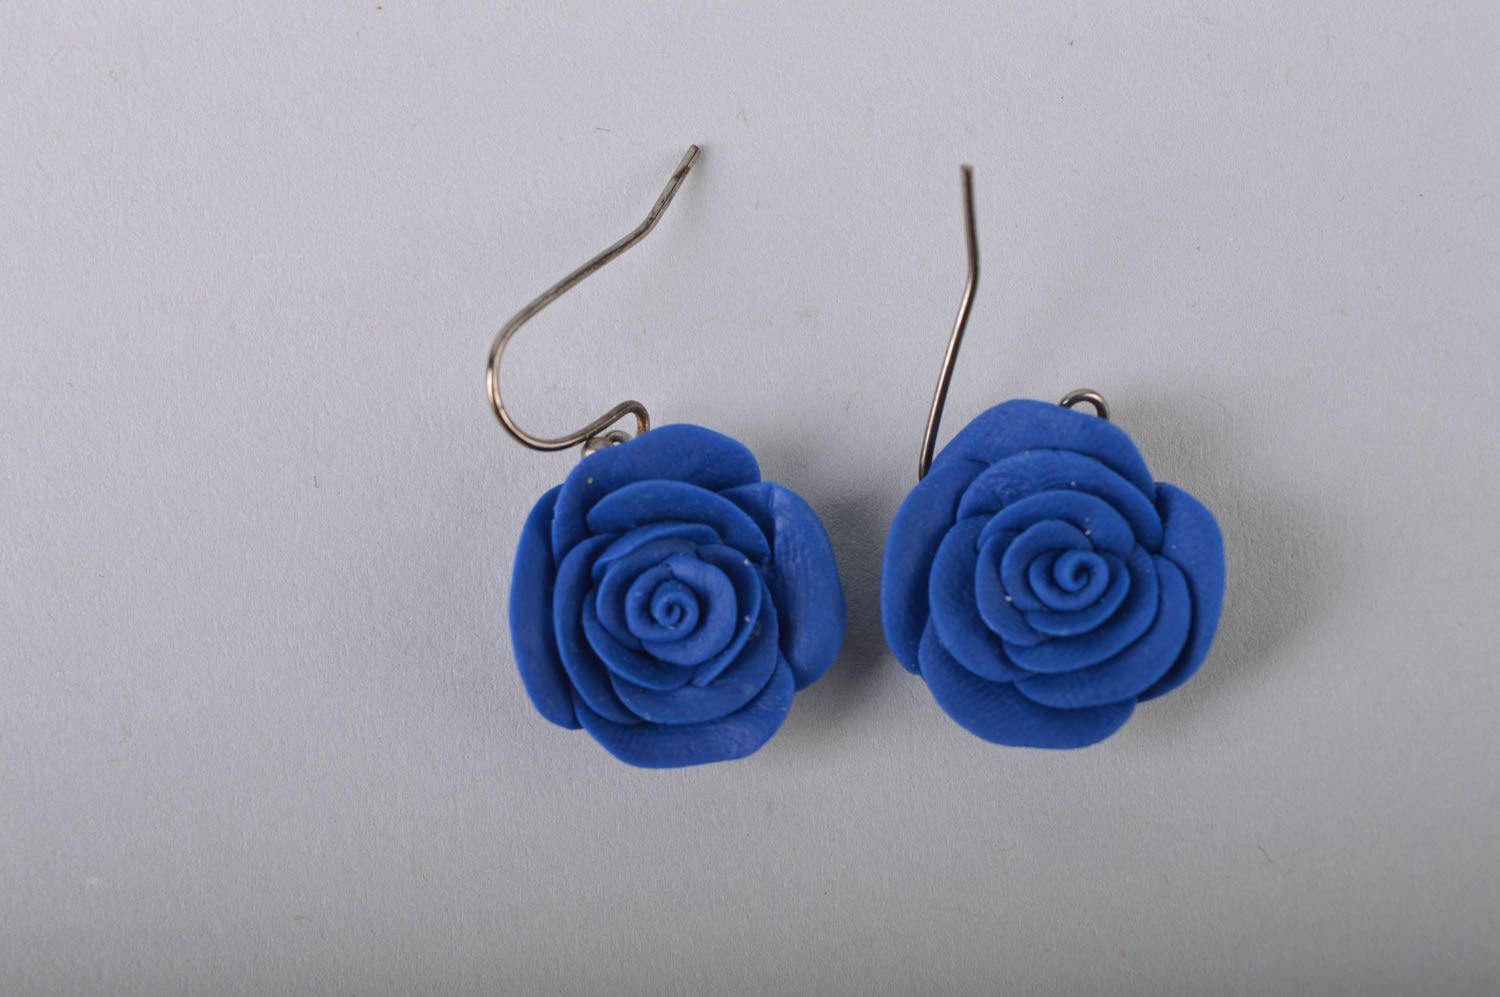 Belles boucles d'oreilles bleues en porcelaine froide faites main Roses photo 2